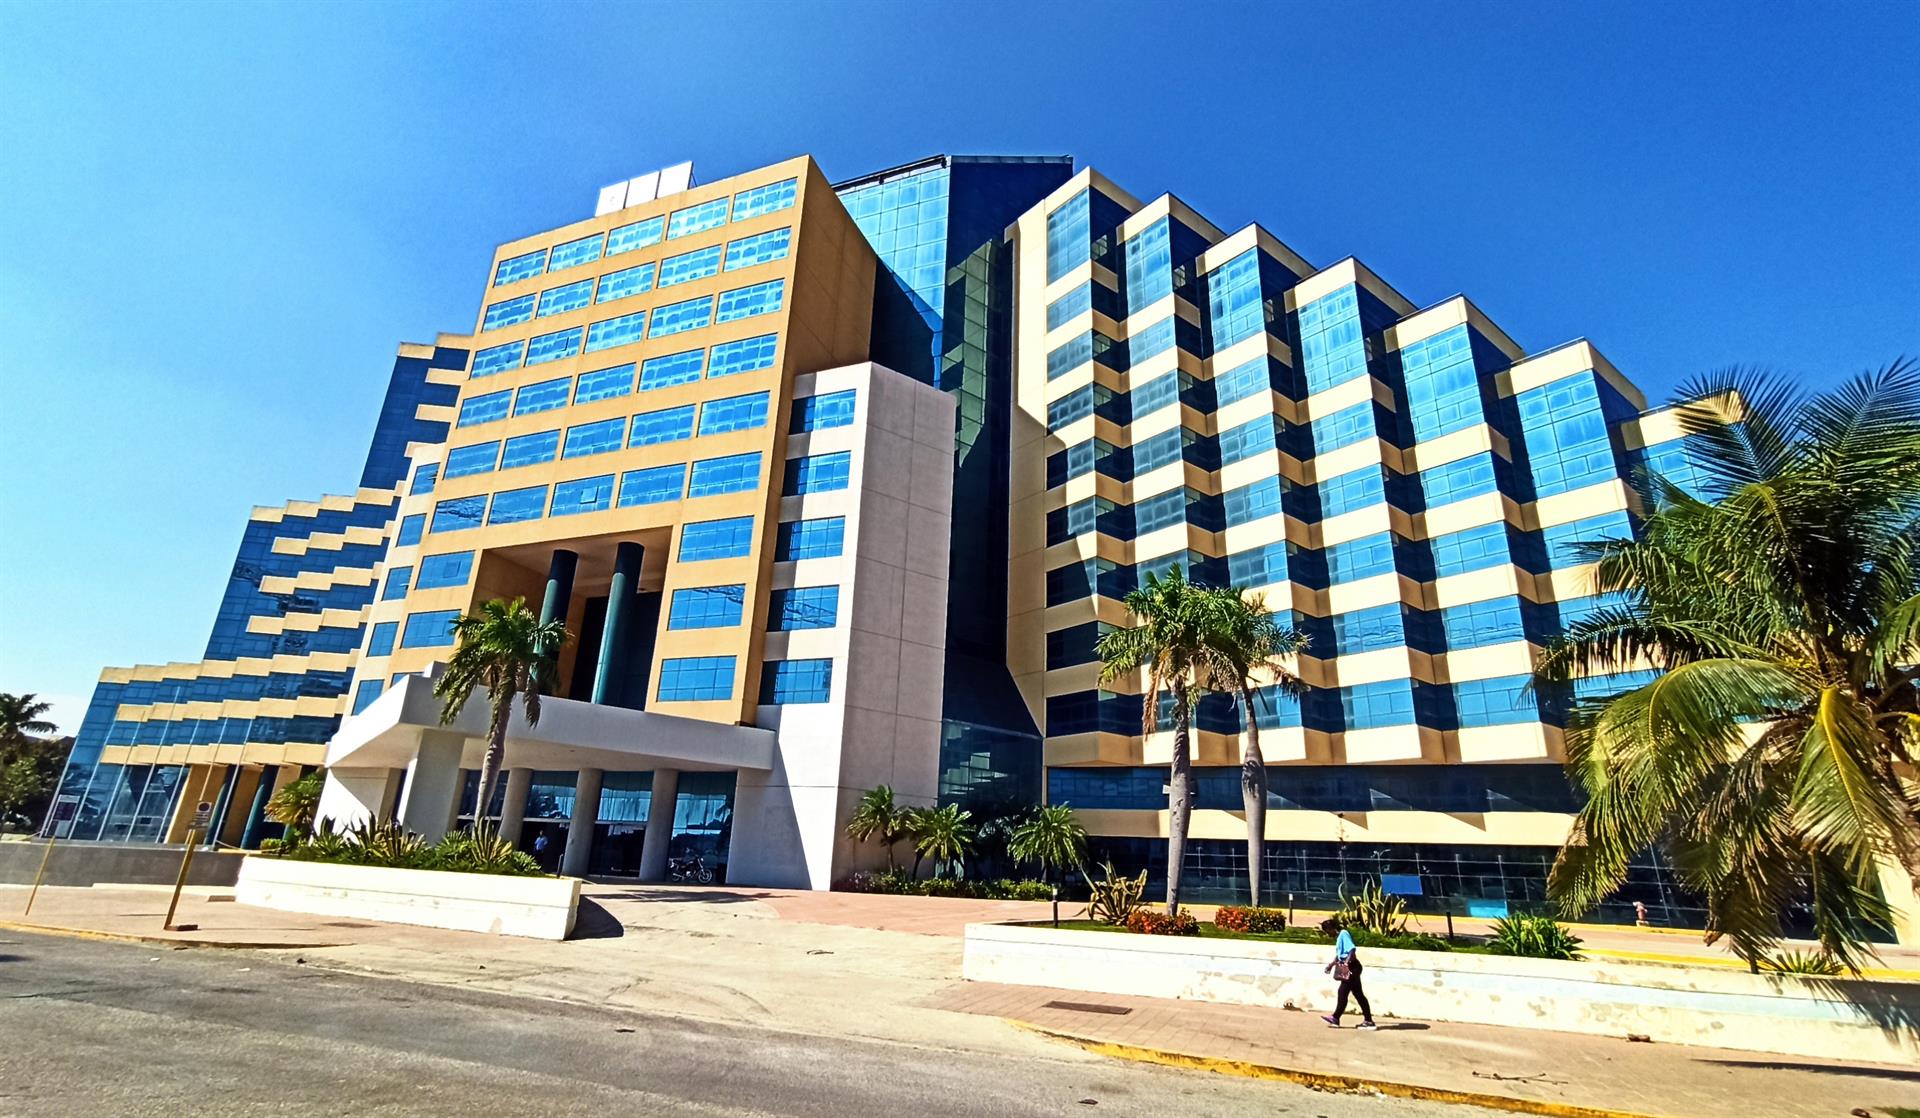 La construcción de nuevos hoteles en Cuba en época de crisis